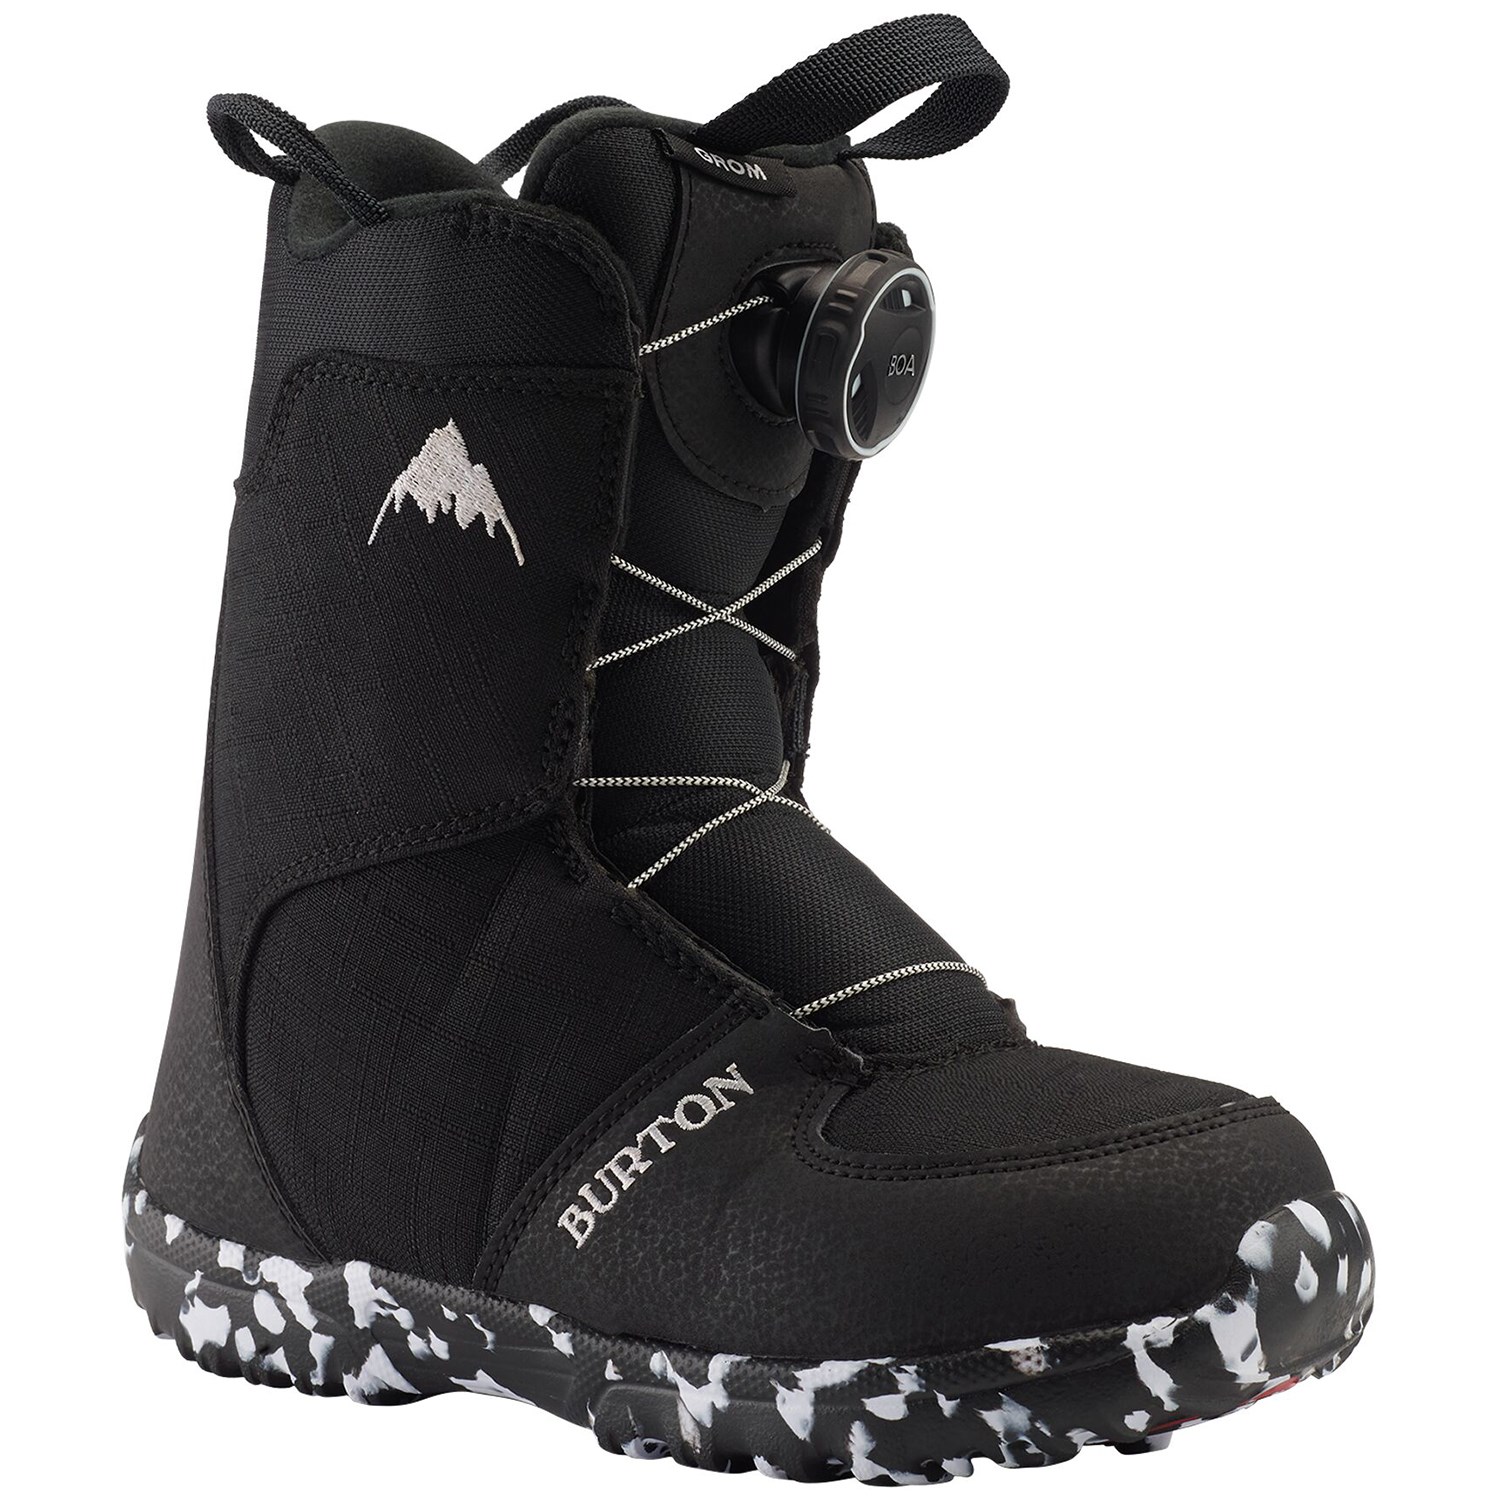 Ботинки для сноубординга Burton Grom Boa, черный ботинки для сноуборда burton grom boa цвет белый фиолетовый длина стельки 21